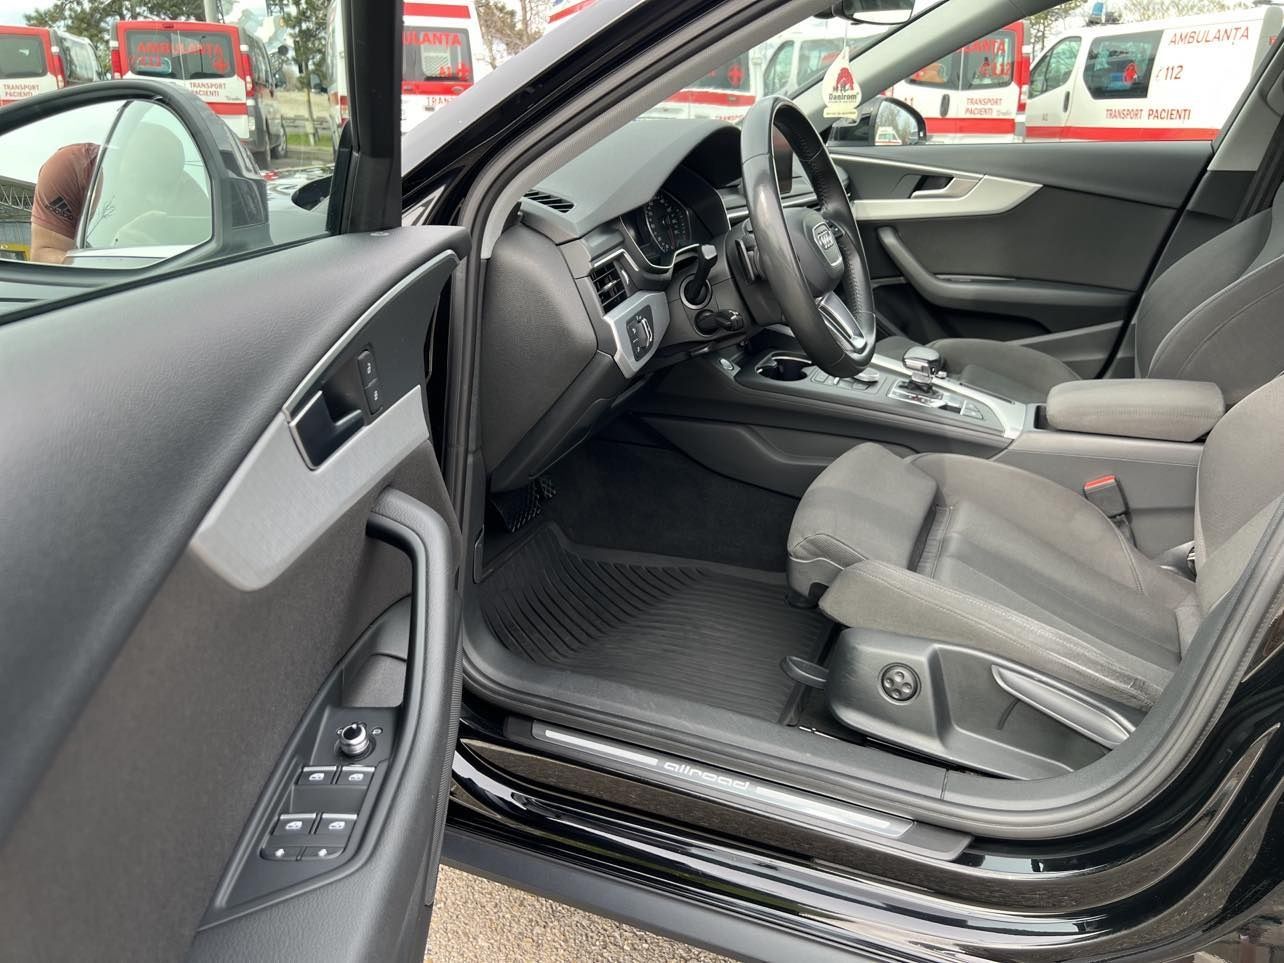 Audi A4 ALLROAD 2018 113658km.2.0 190 cp Quattro